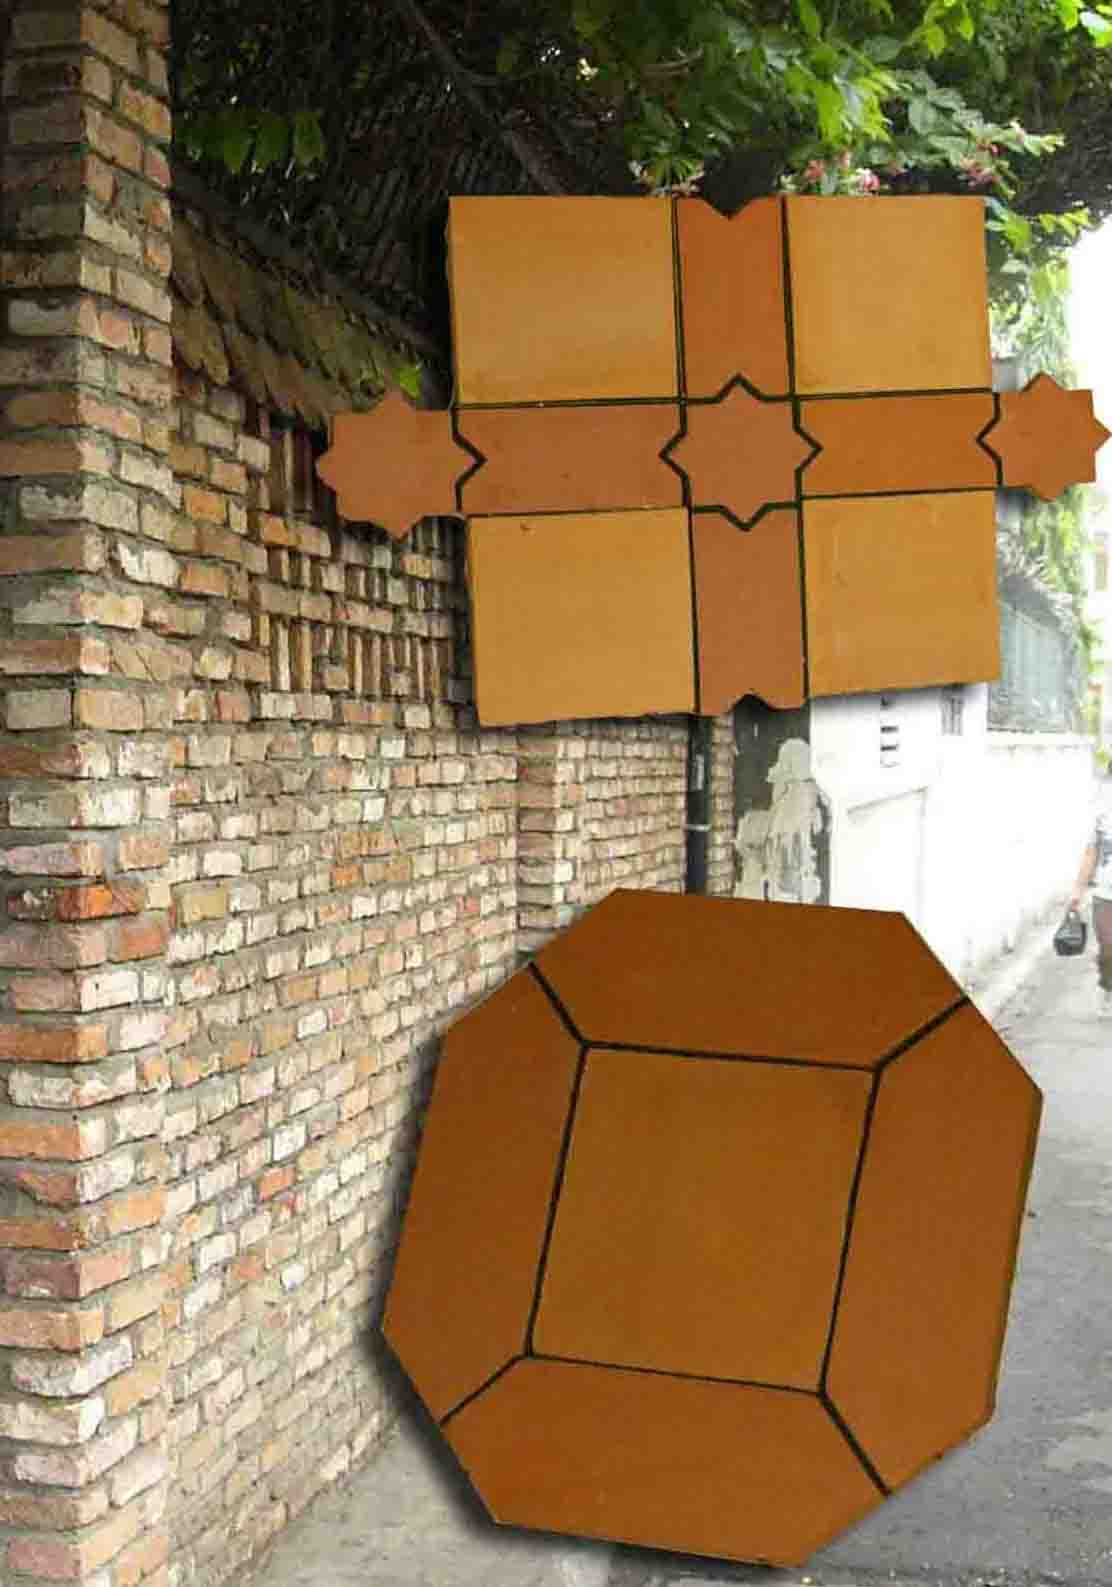  Terracotta Deco Clay Block And Tiles (Terrakotta-Deco Clay Block und Fliesen)